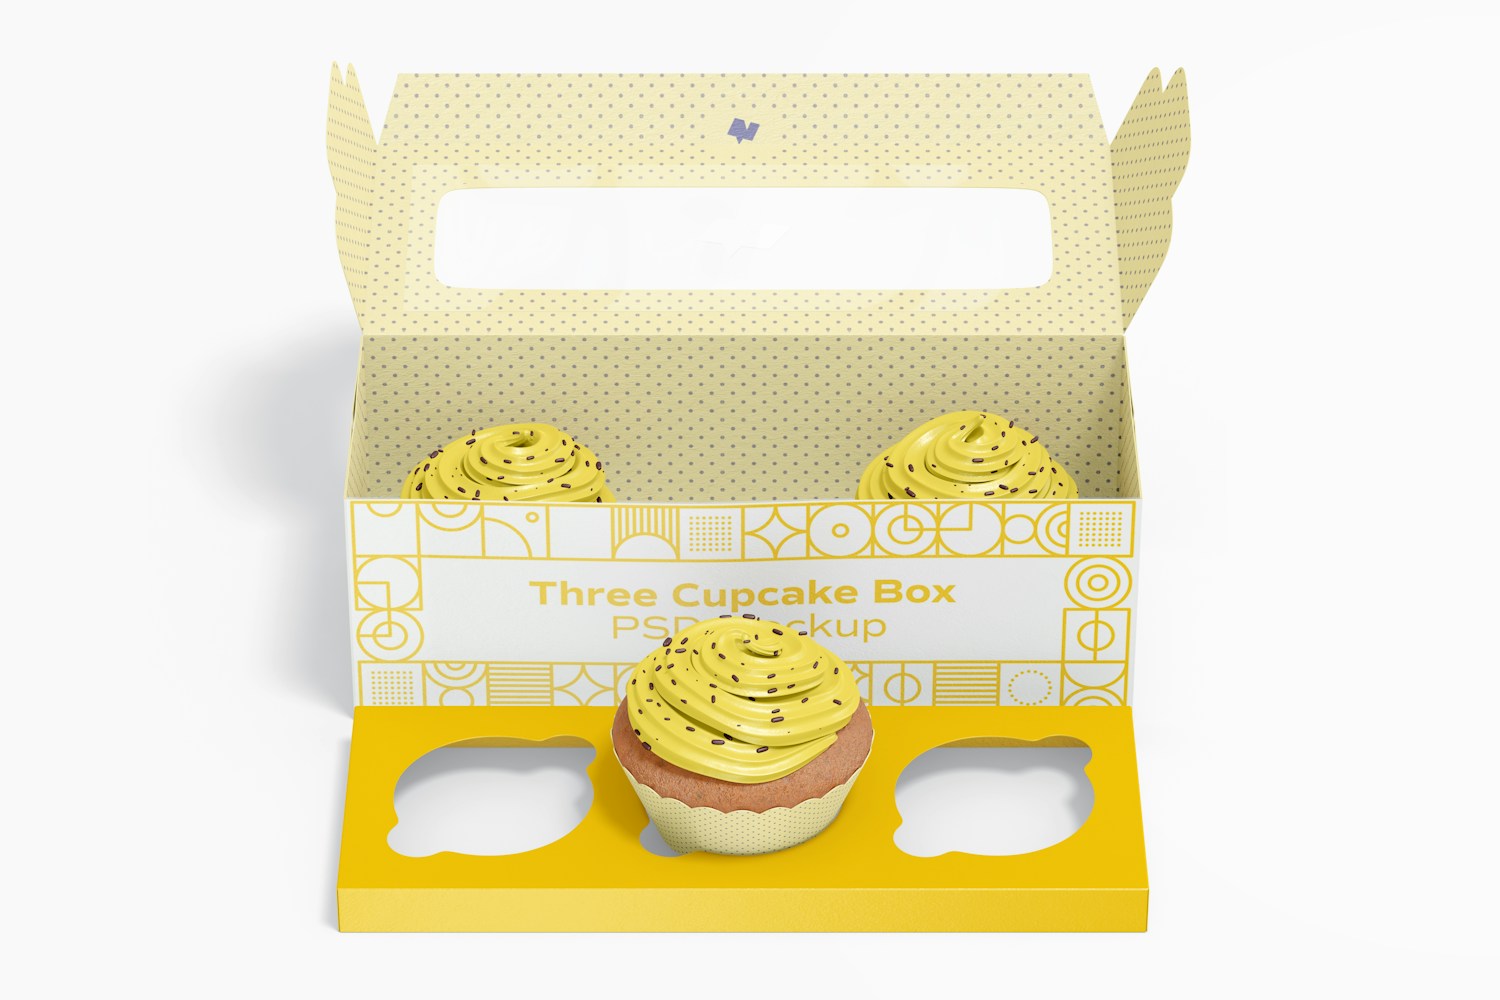 Three Cupcake Box Mockup, Front View